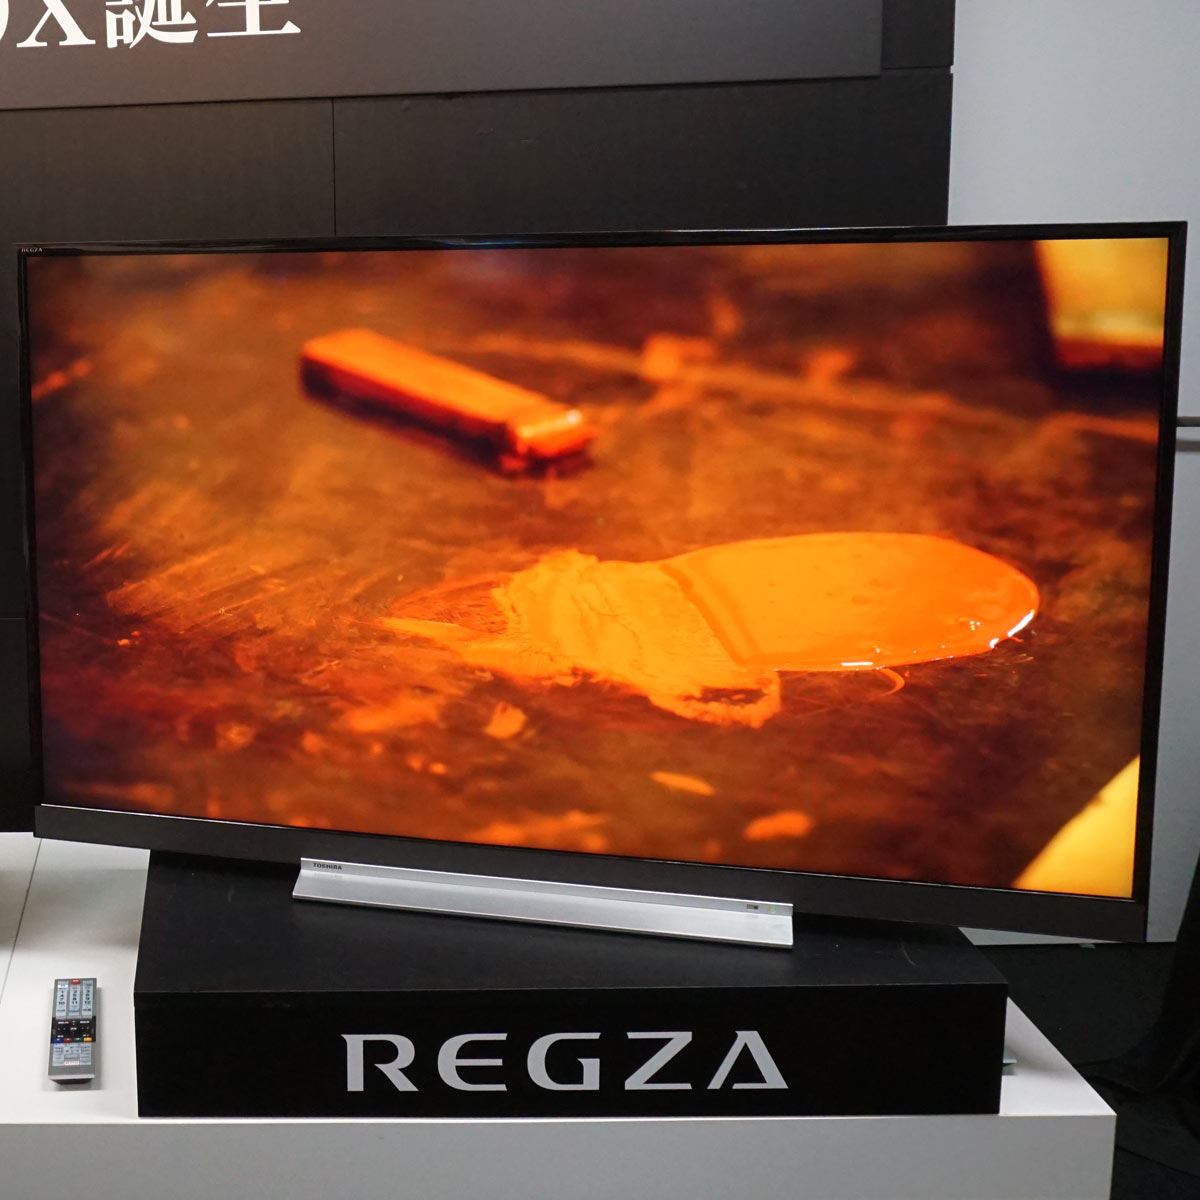 東芝4K液晶テレビ「REGZA Z720X」シリーズ登場！Zの名に恥じない高画質 